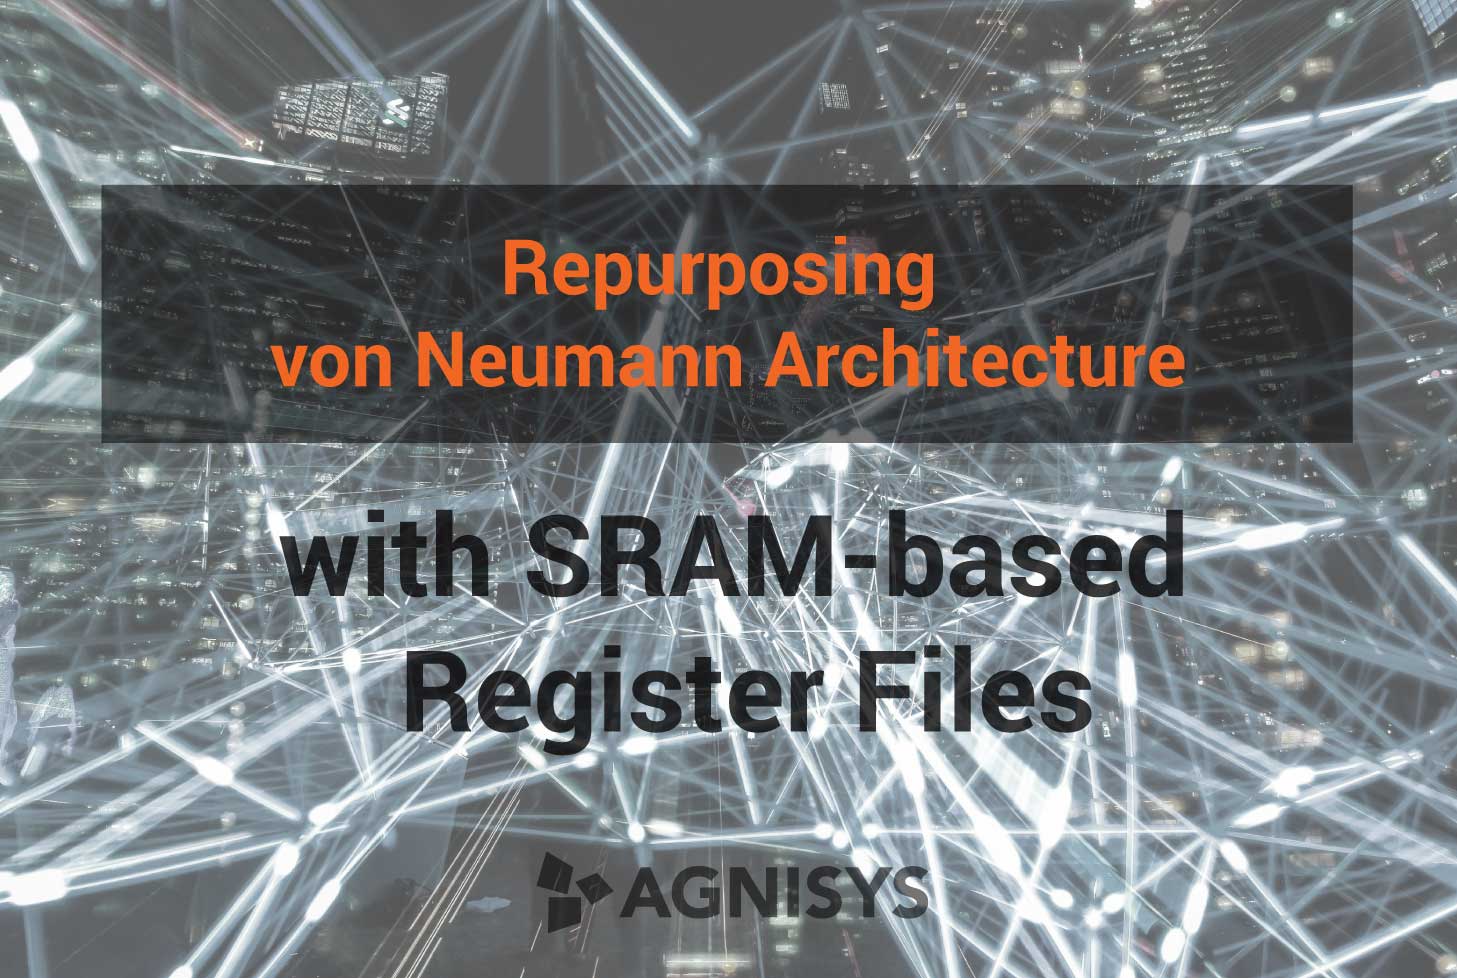 Repurposing von Neumann Architecture with SRAM-based Register Files